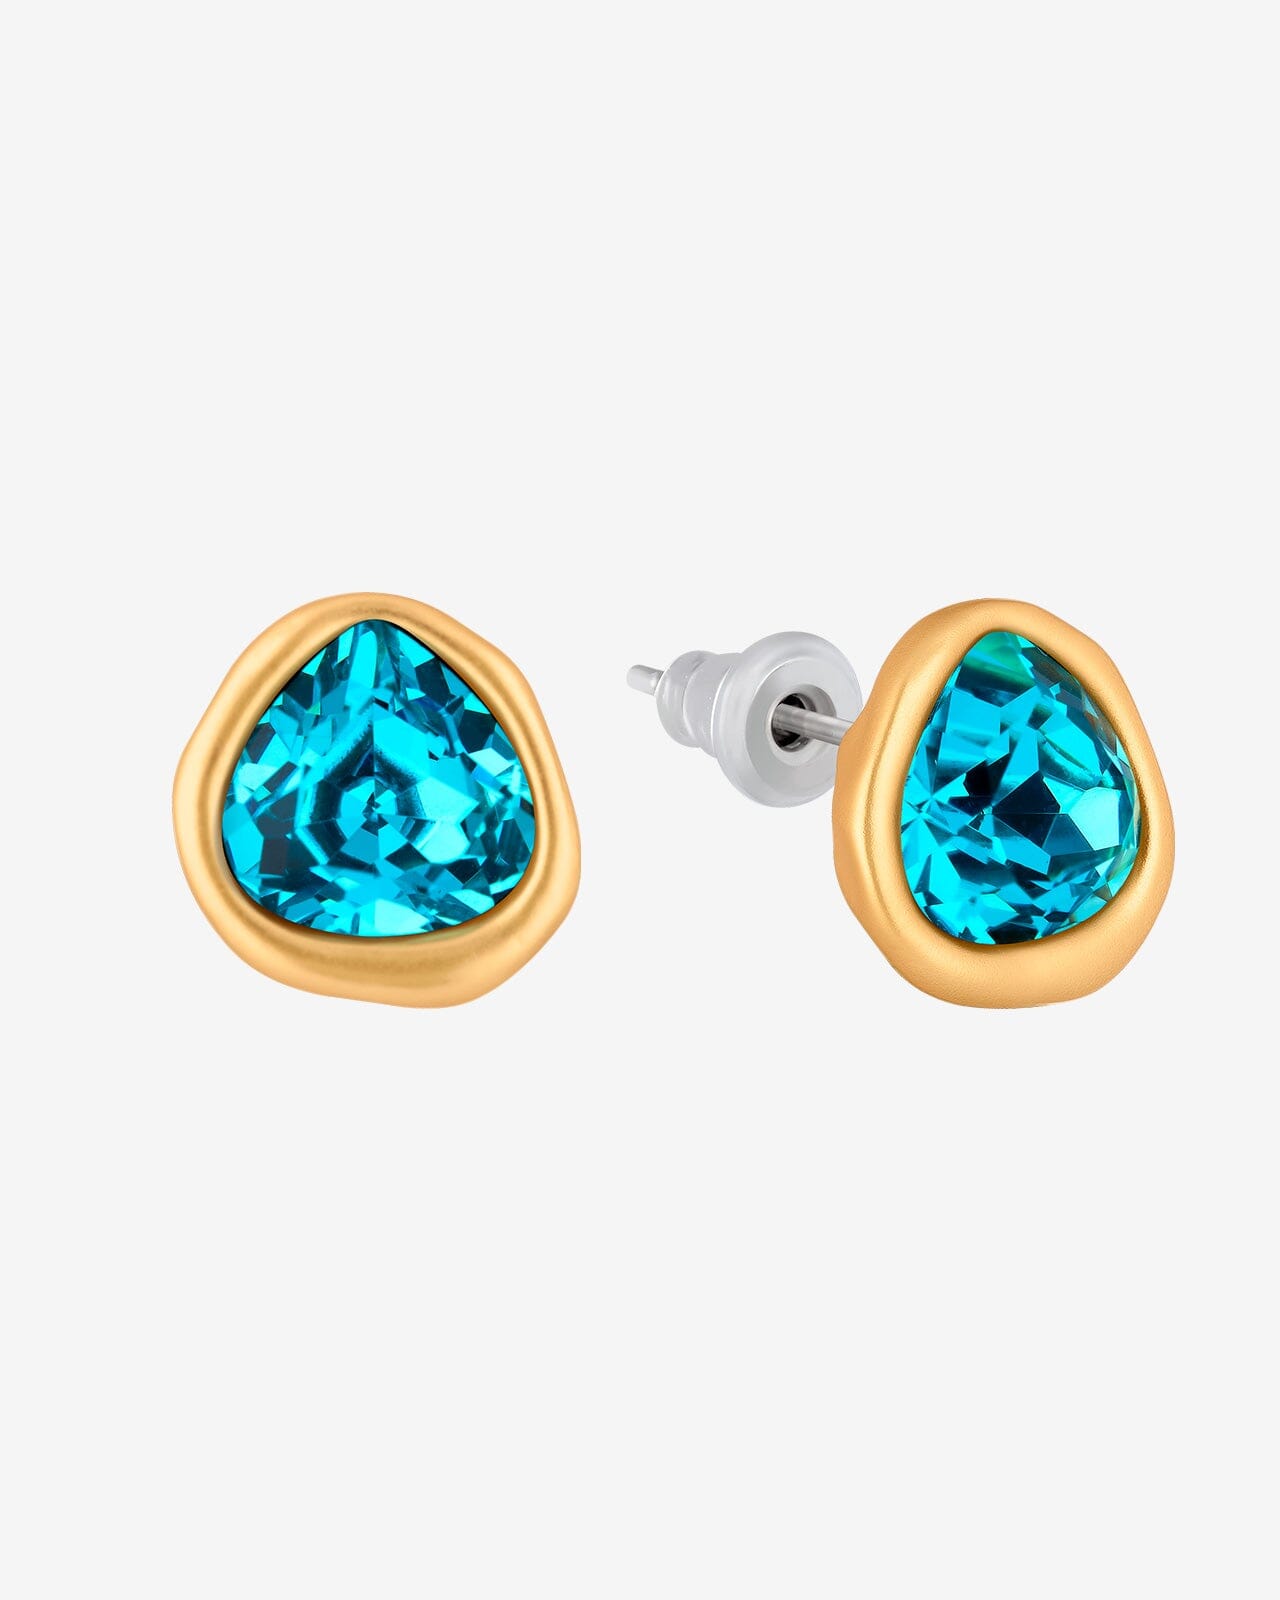 Austrian Crystal Stud Earrings - Vinty Jewelry